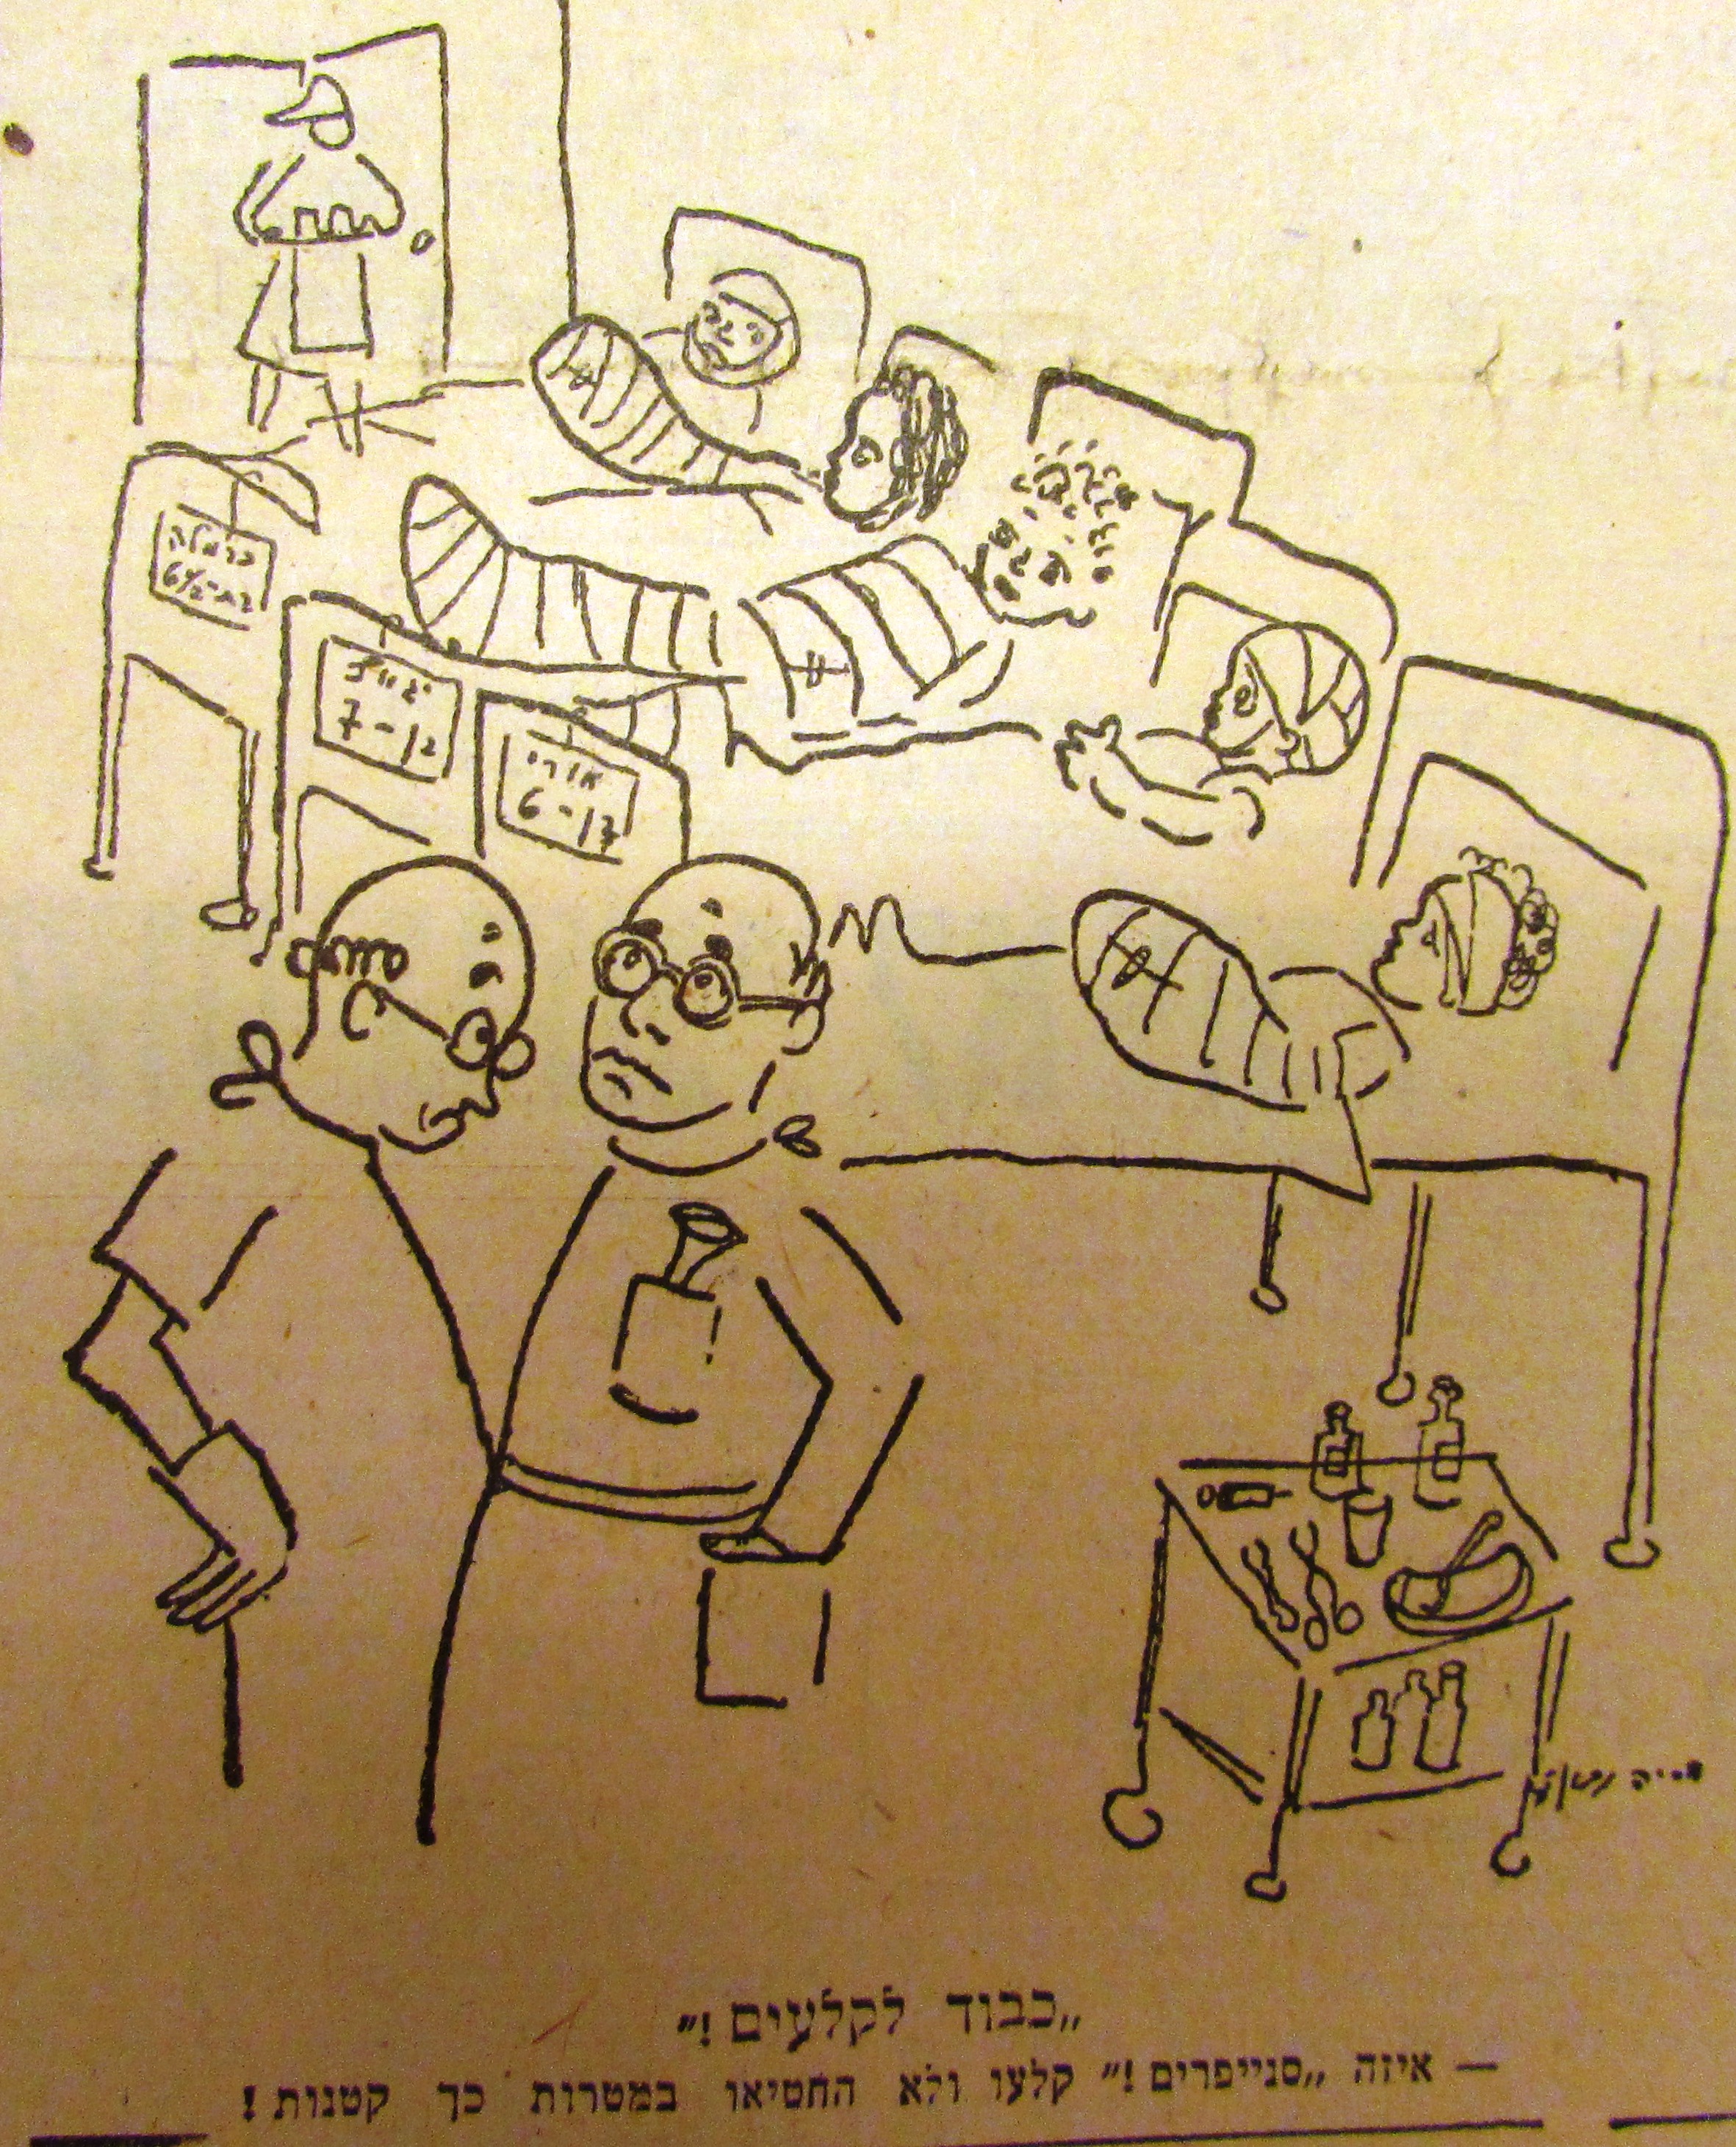 קריקטורה של אריה נבון בעיתון "דבר", 25.11.1945.